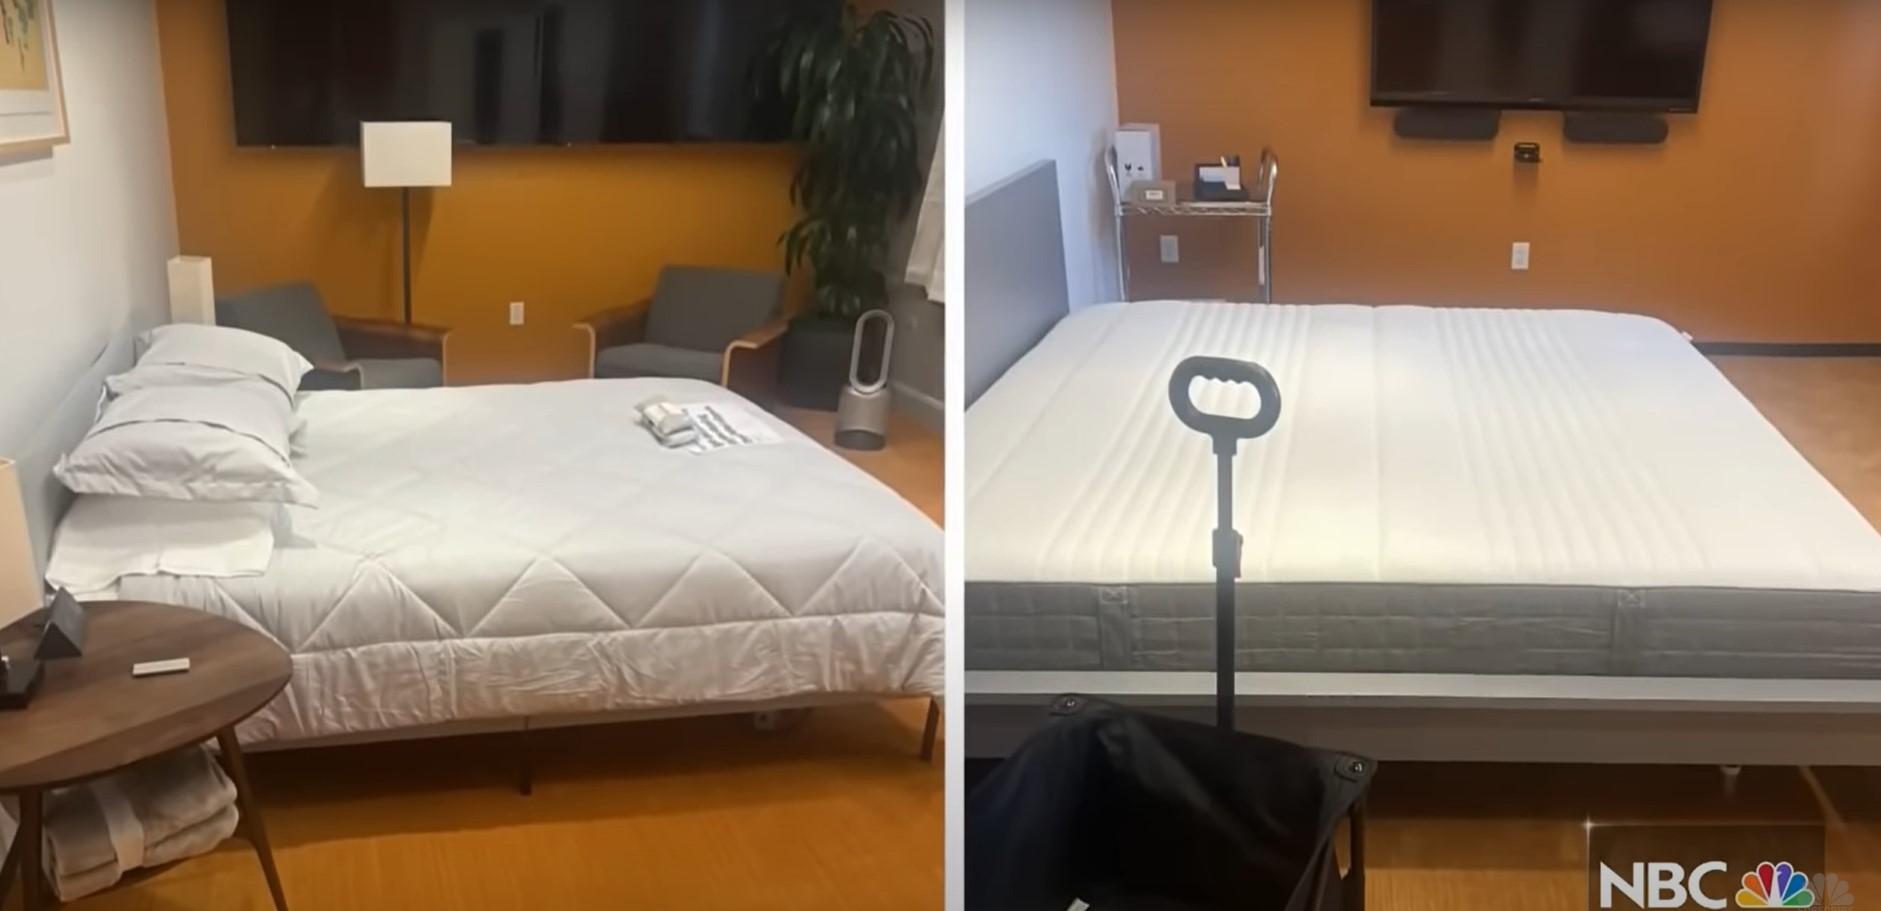 Cum arată "camerele de hotel" create de Elon Musk în spaţiile de birouri Twitter